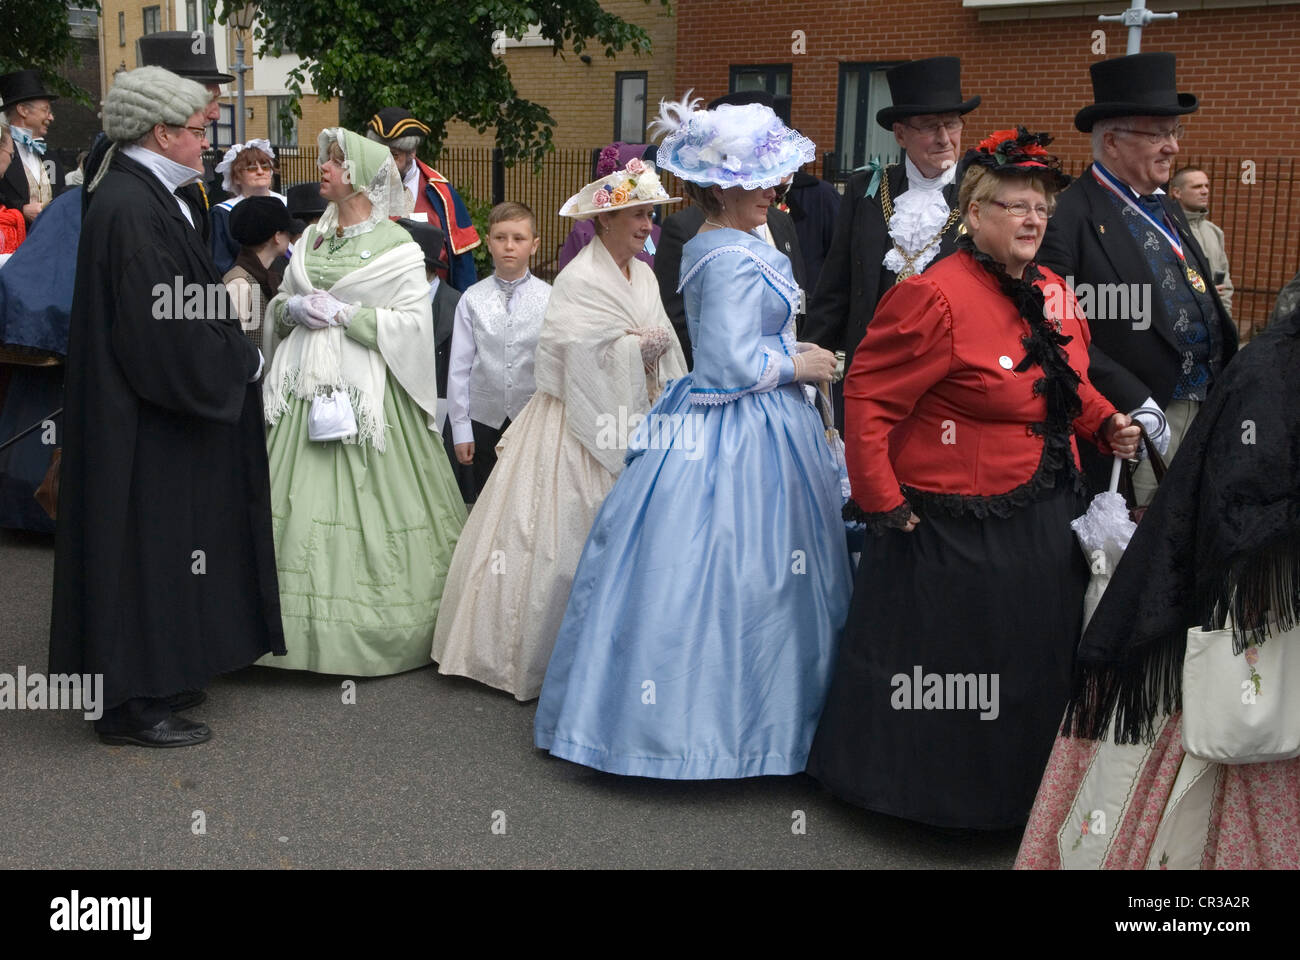 Charles Dickens Festival. Rochester Kent REGNO UNITO. Le donne indossano abiti crinolina. Crinolines periodo Vittoriano costume. HOMER SYKES Foto Stock